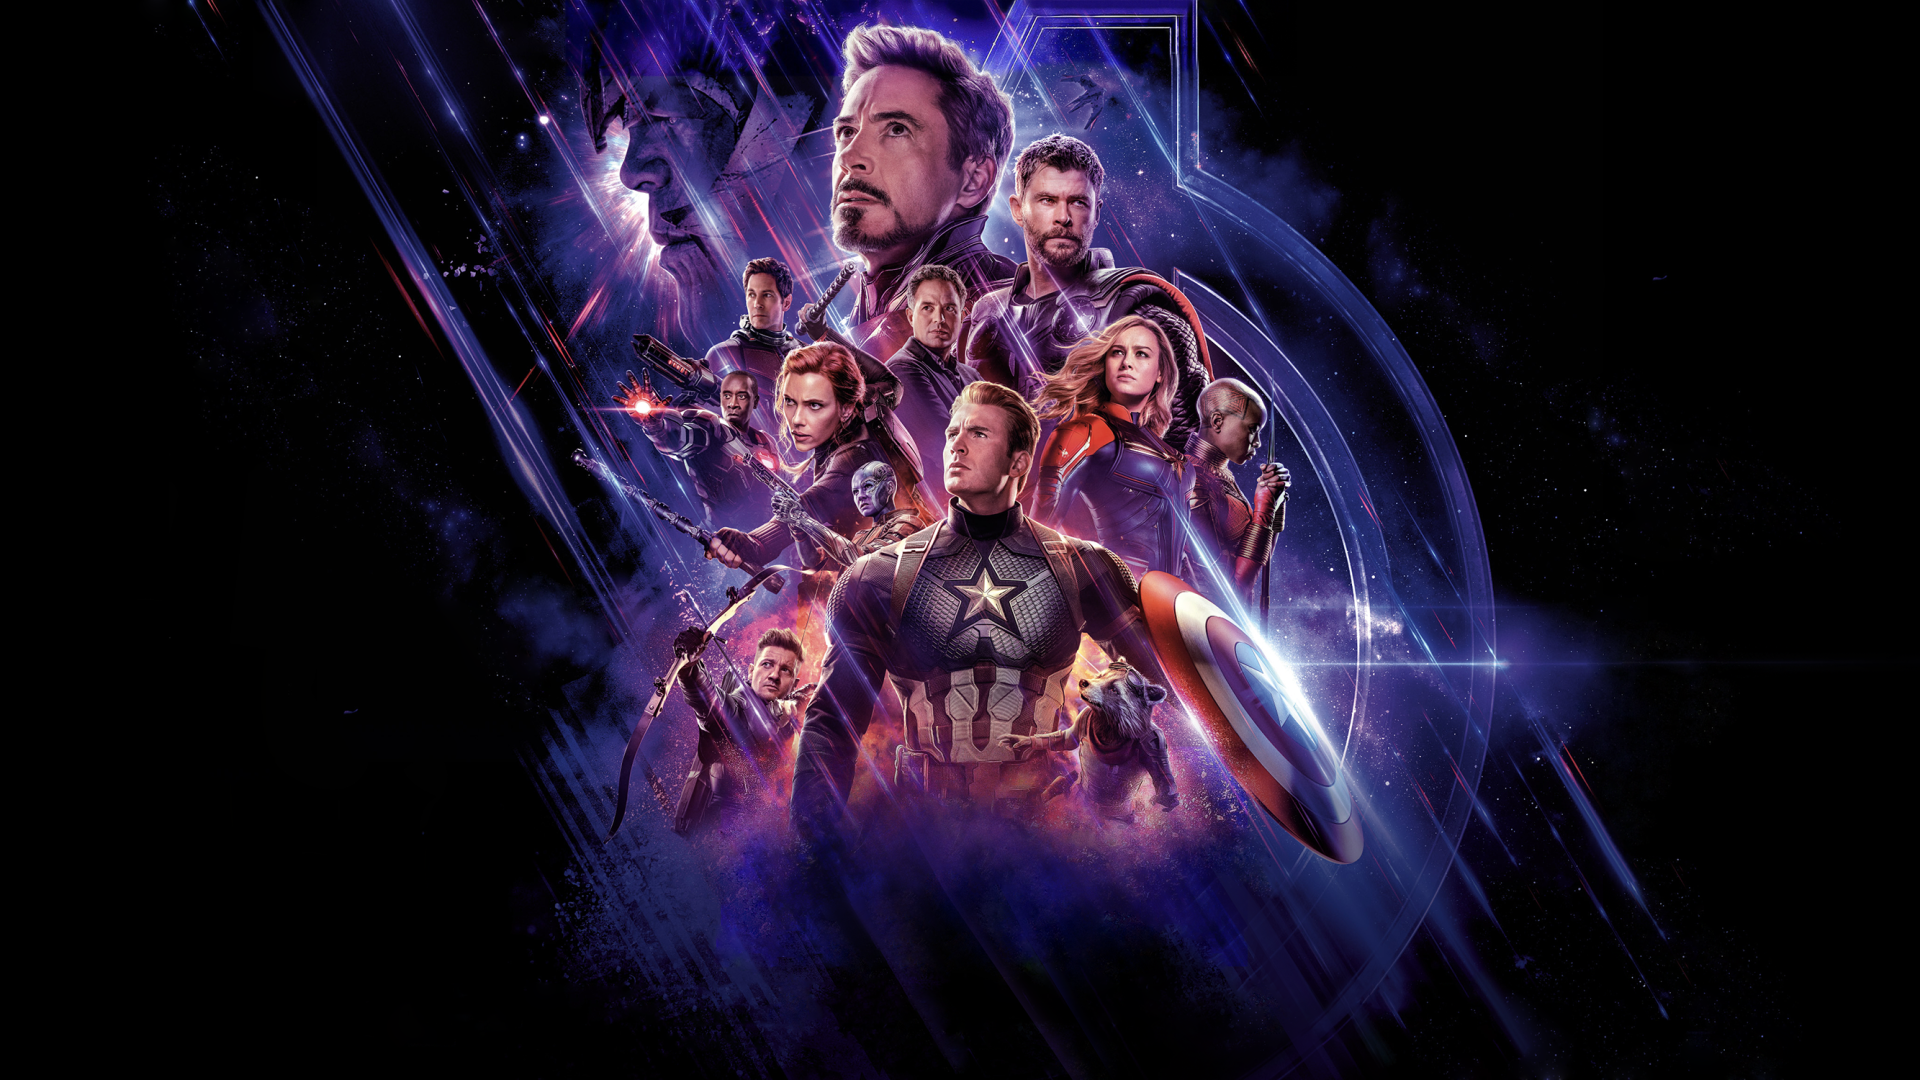 Avengers Endgame Image